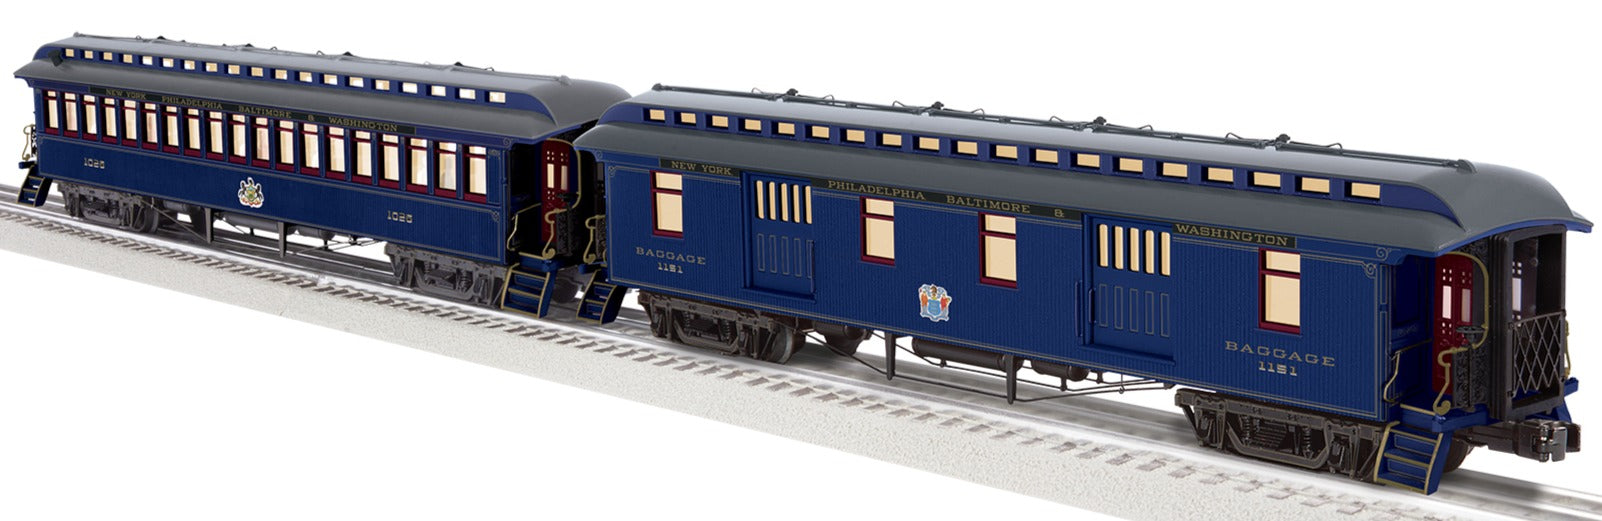 Lionel 2427550 - Royal Blue Wood Passenger Car "Baltimore & Ohio" (2-Car) Set A